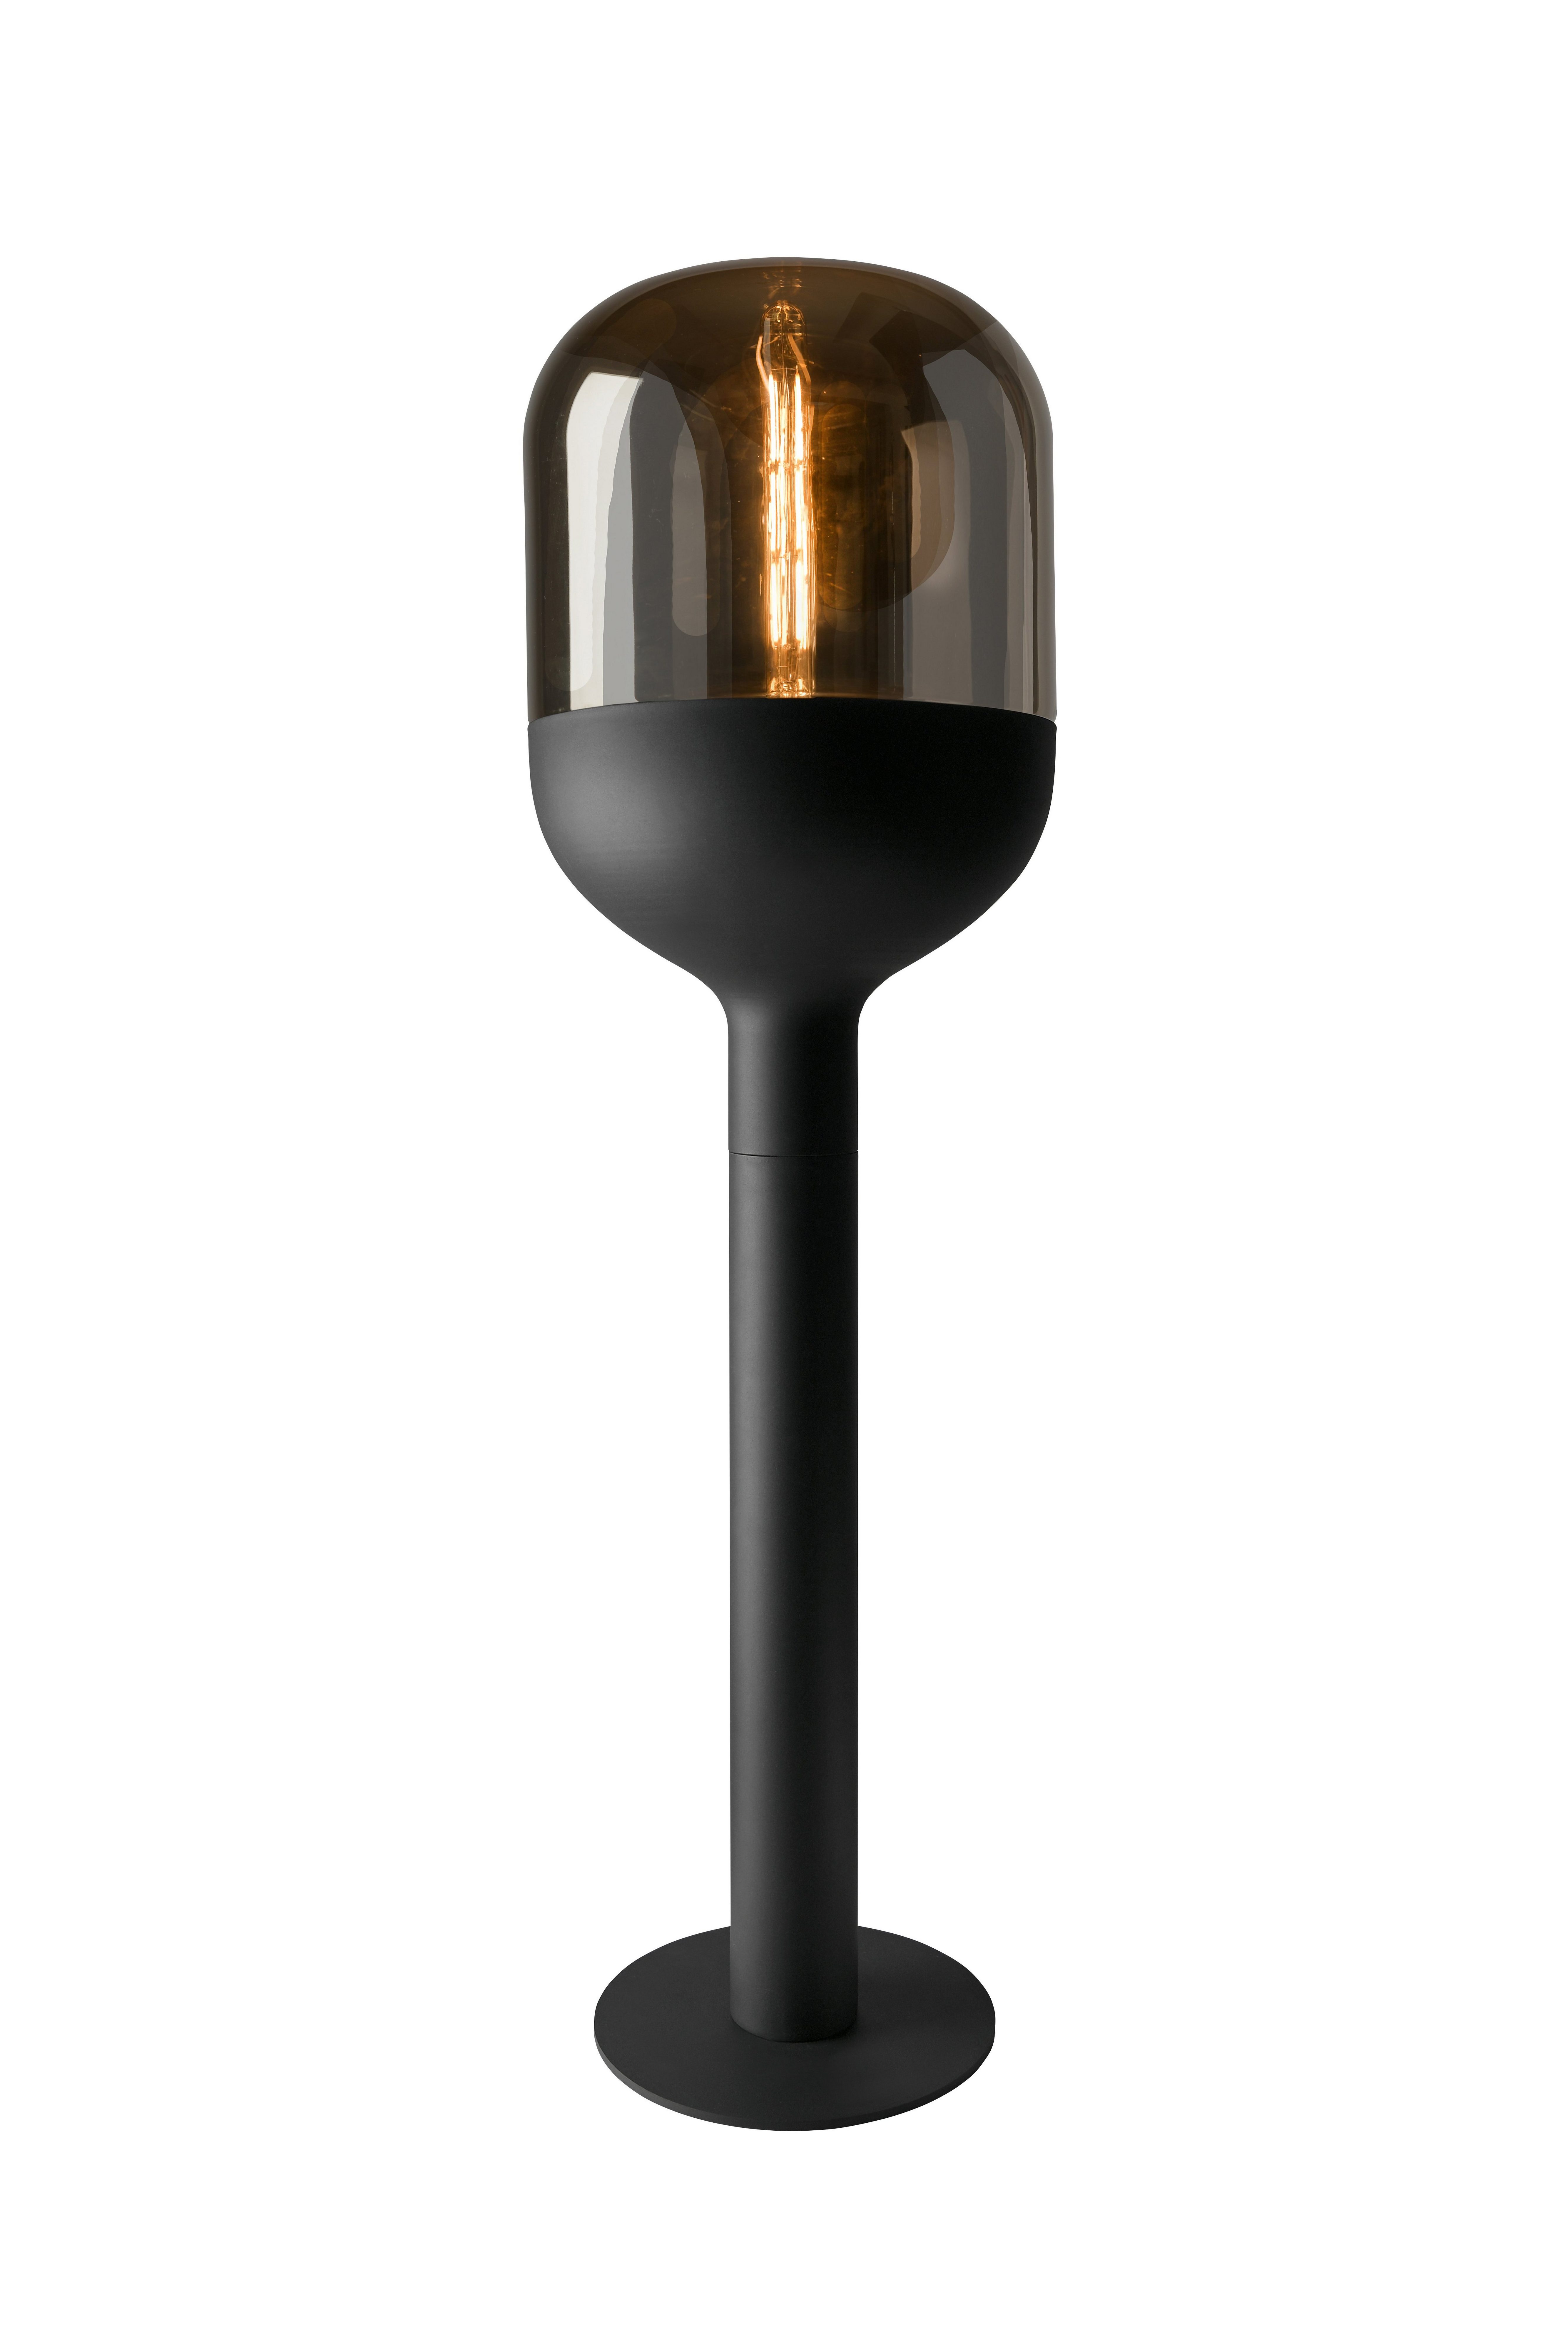 SOMPEX Stehlampe Stehlampe Dome schwarz Glas gold Vintage-Look 120cm, ohne Leuchtmittel, mundgeblasenes Glas, E27 Fassung, gold bedampft